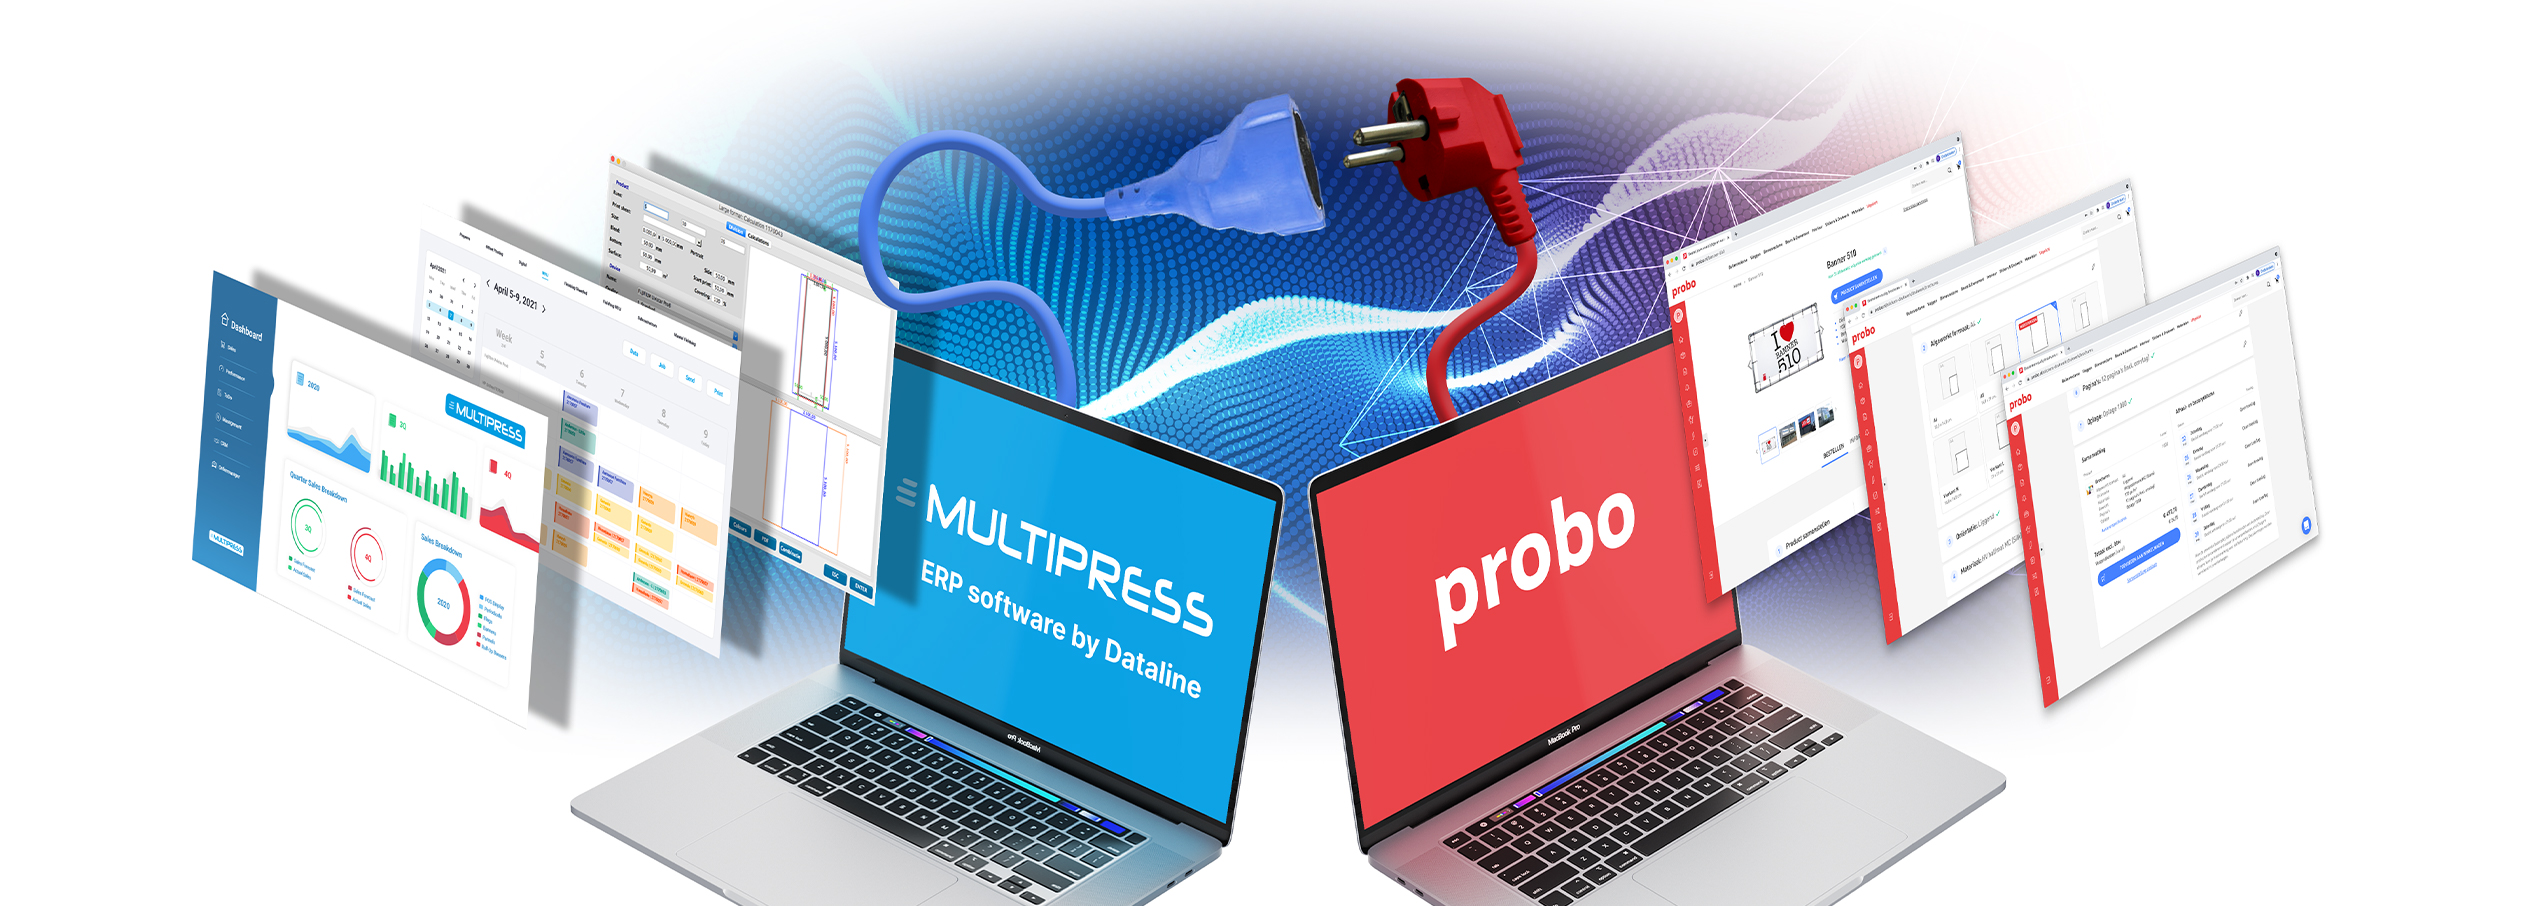 Los usuarios de MultiPress pueden hacer sus pedidos directamente a Probo